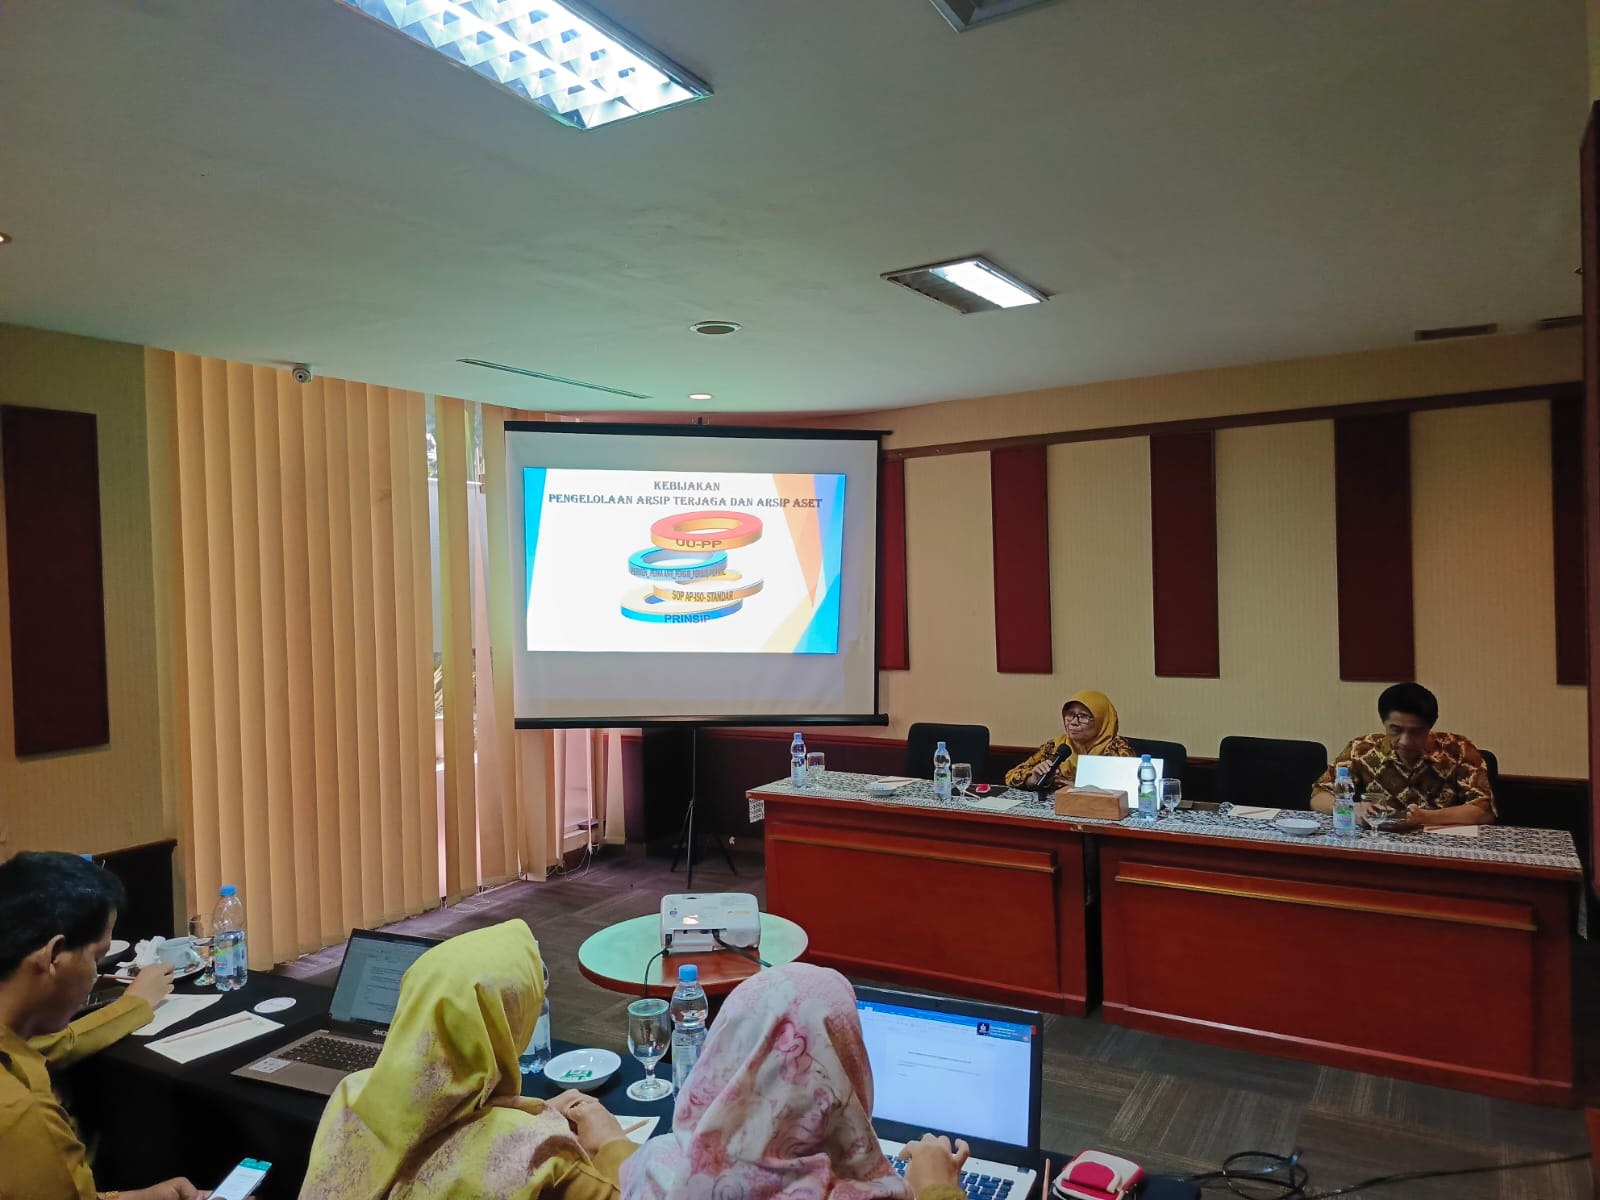 Bimtek Pengelolaan Arsip Terjaga dan Arsip Aset Tahun 2024 di Serang Banten